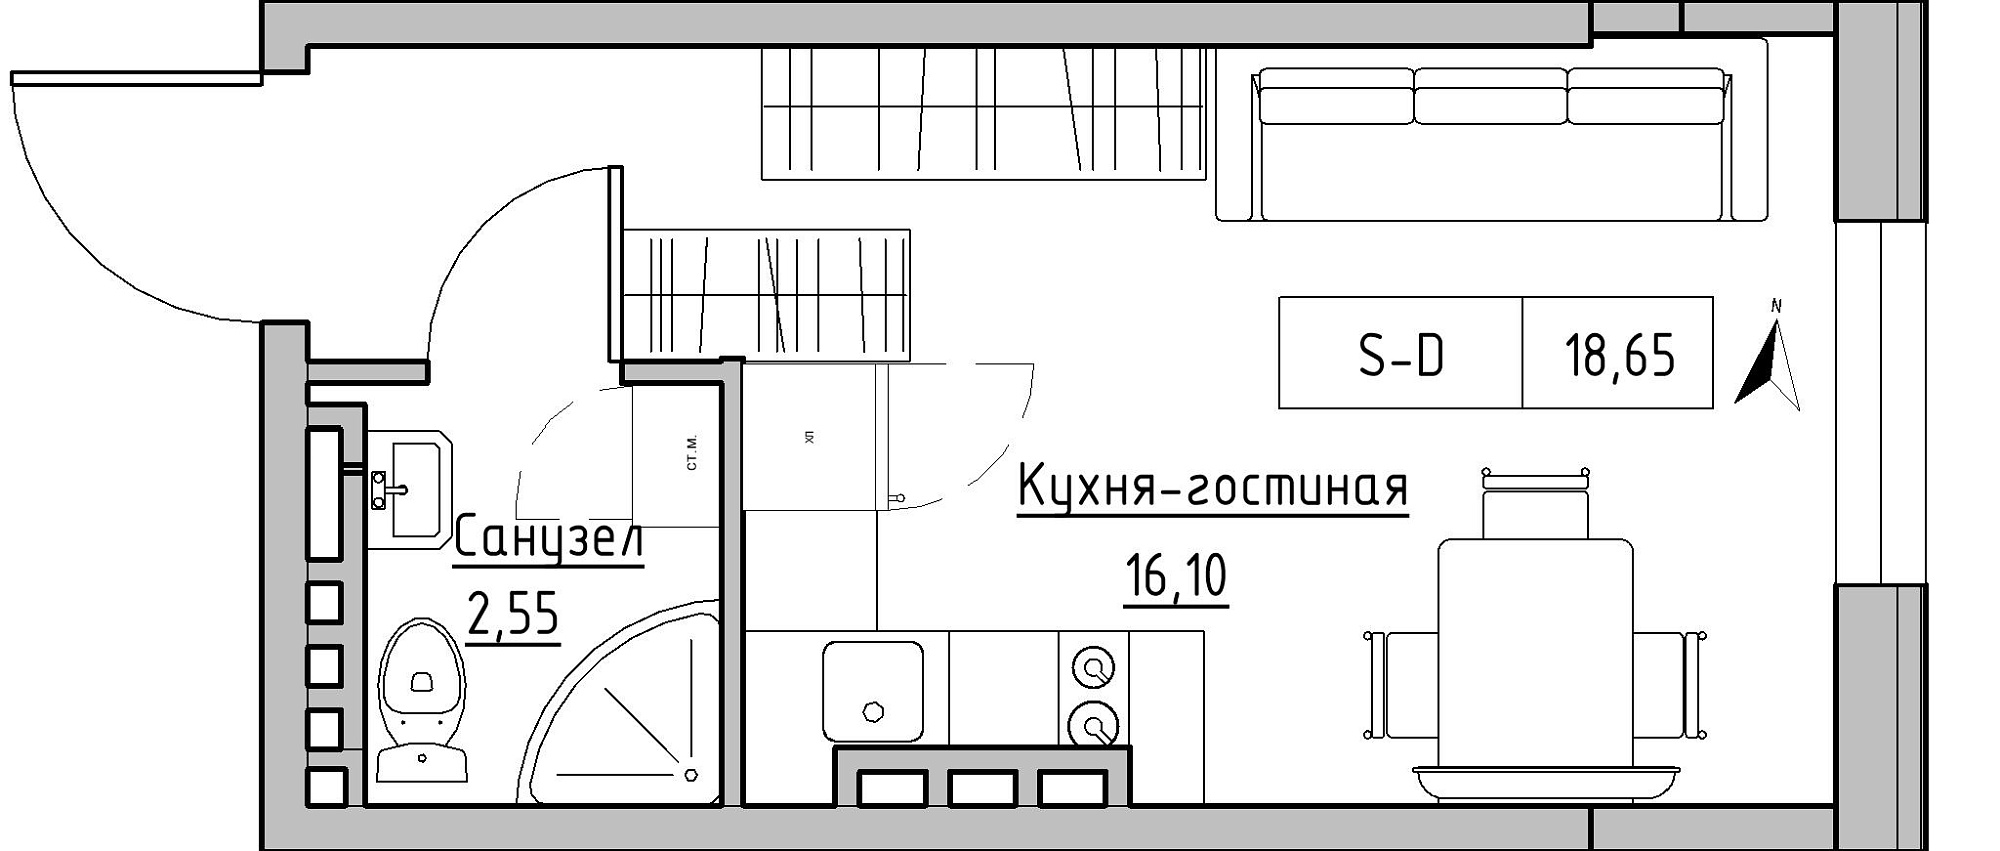 Планування Smart-квартира площею 18.65м2, KS-024-05/0017.